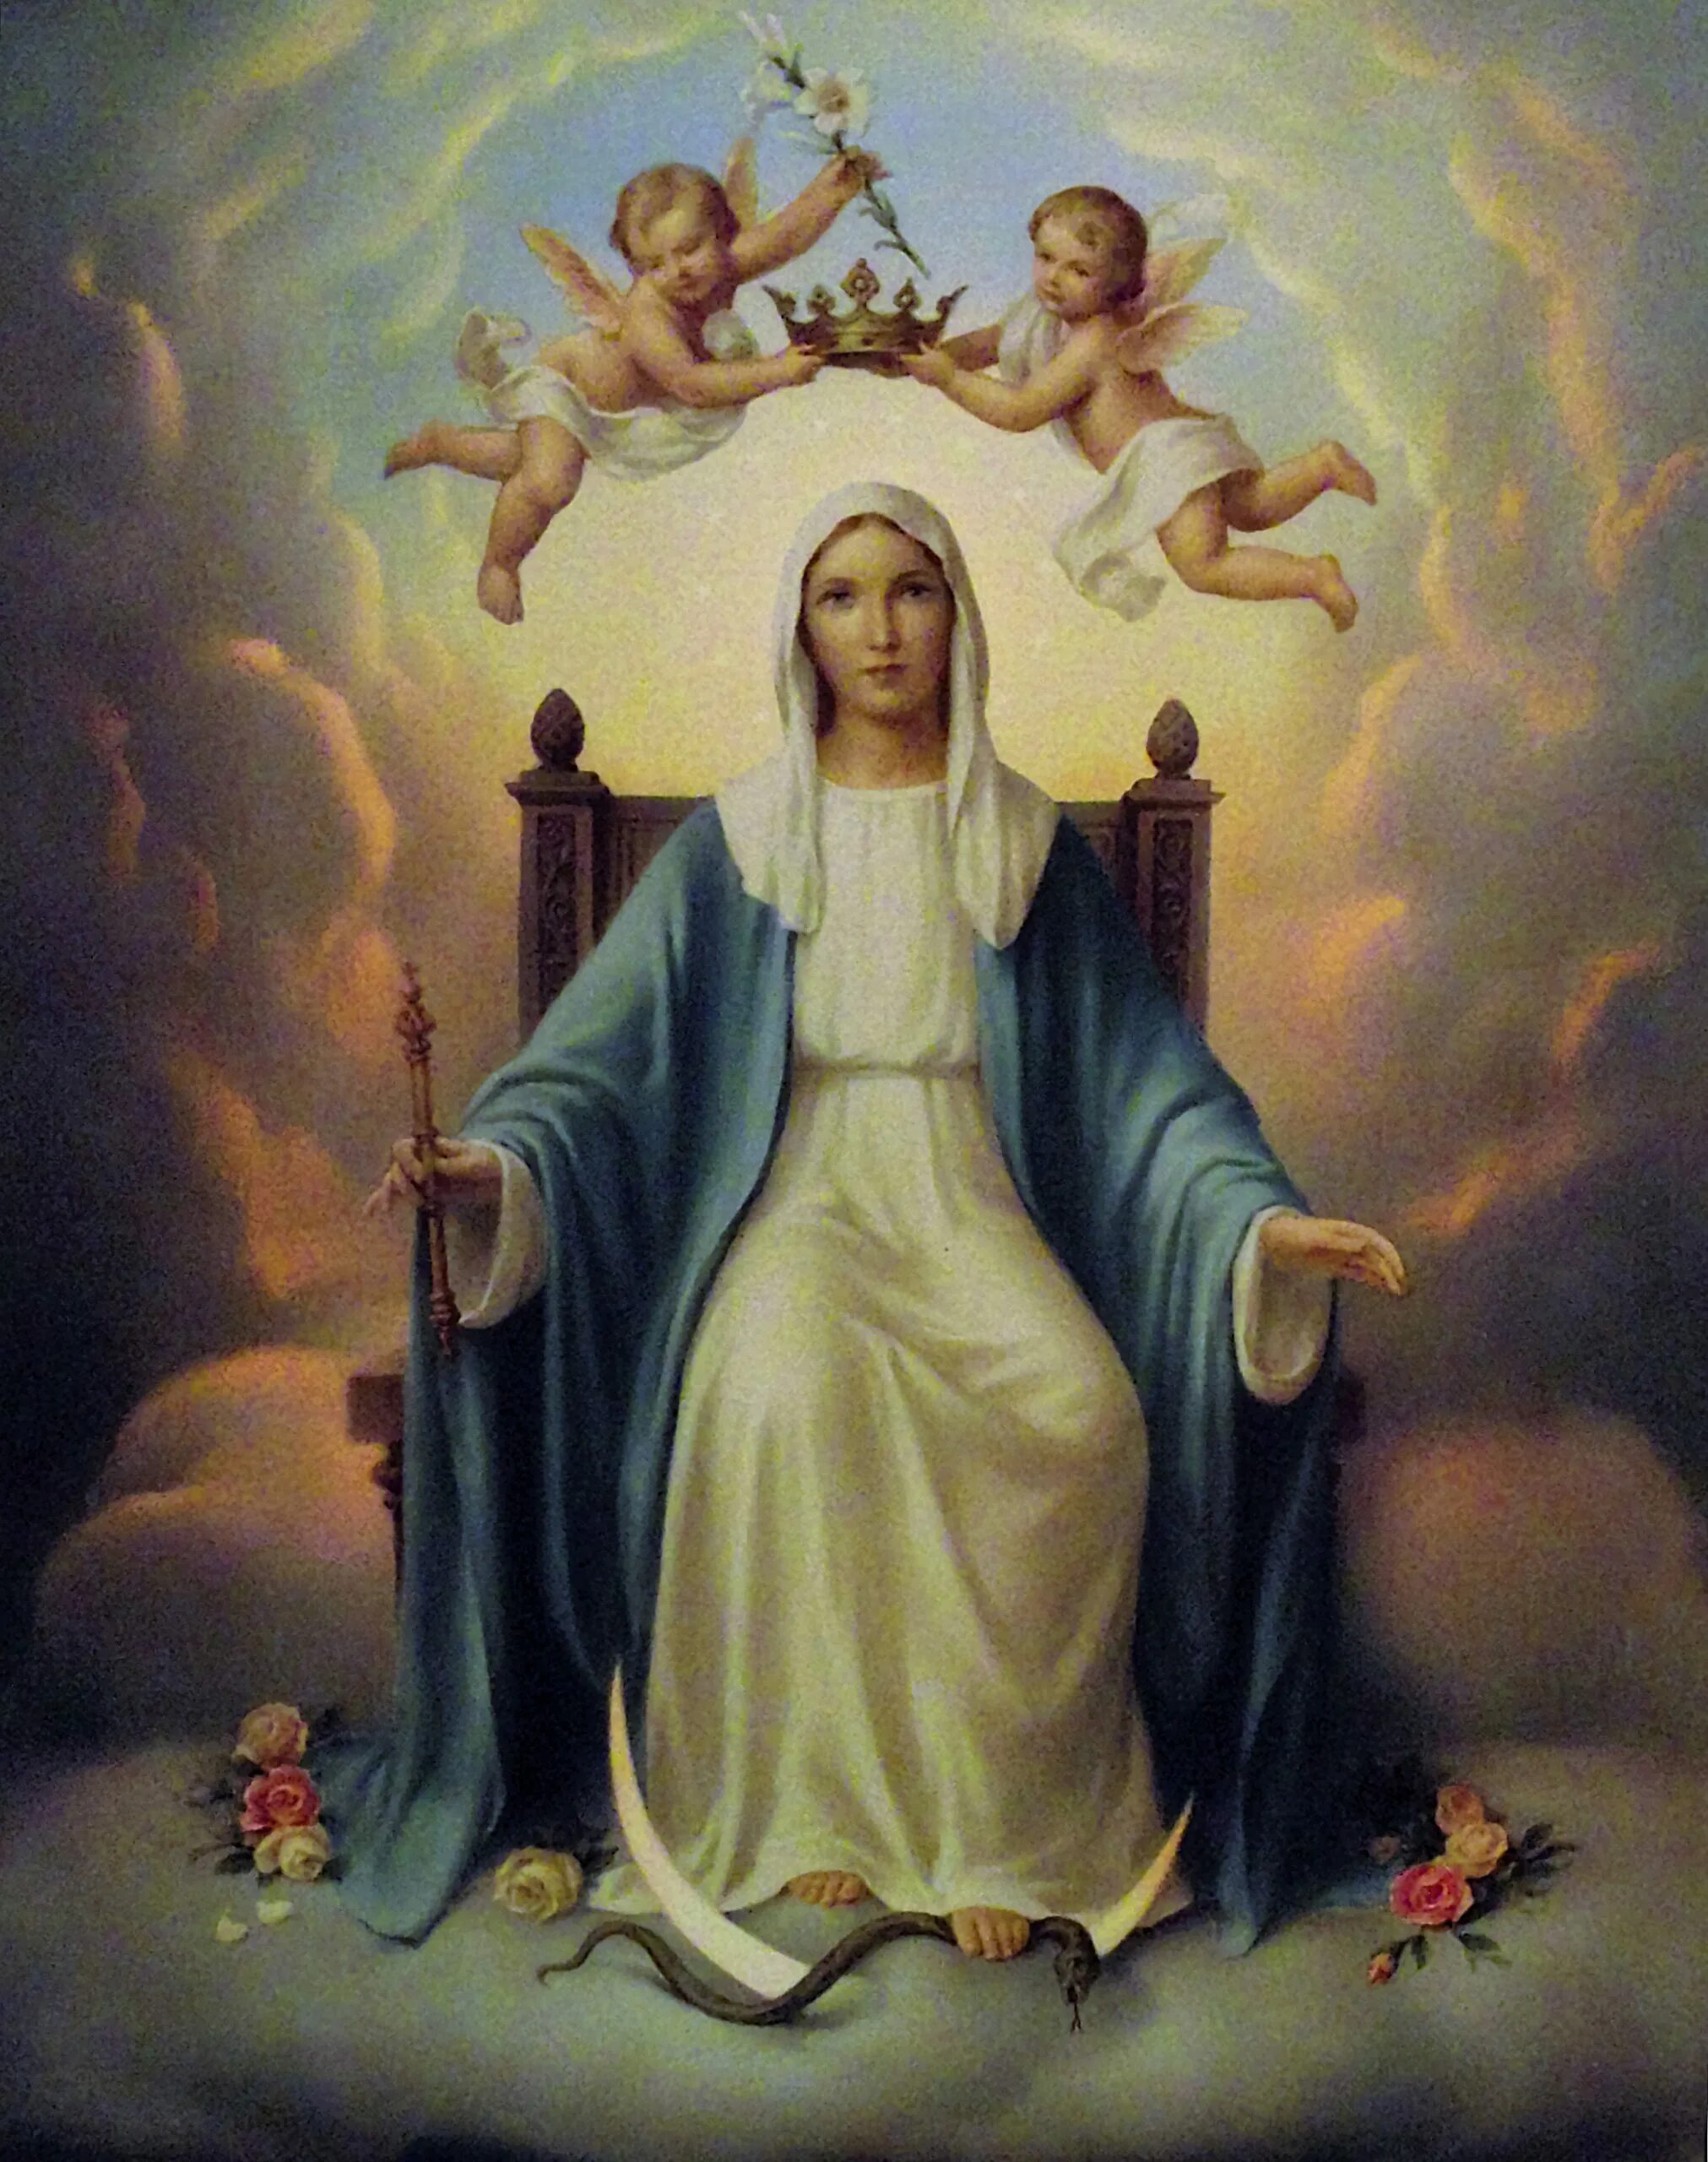 La virgen de la. Святой розарий Пресвятой Девы Марии. Католическая икона Девы Марии.